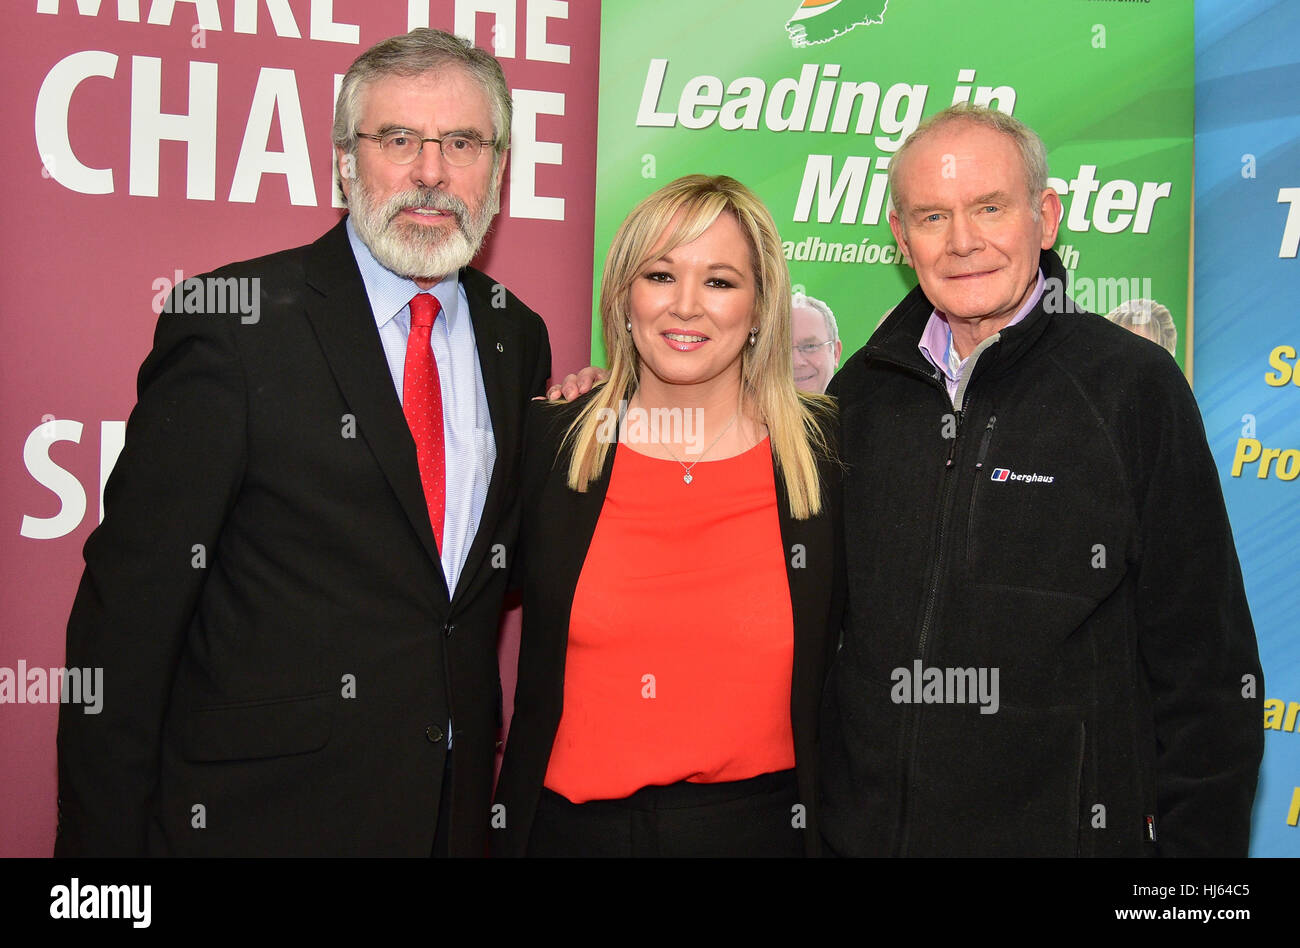 Clonoe, Irlande. 25 Jan, 2017. Irlande du Sinn Fein, Gerry Adams, leader du Sinn Fein TD Nouveau Chef Michelle O'Neill et ancien sous-ministre Martin McGuinness, au cours de l'événement retrouvailles dans Clonoe. Credit : Mark Winter/Alamy Live News Banque D'Images